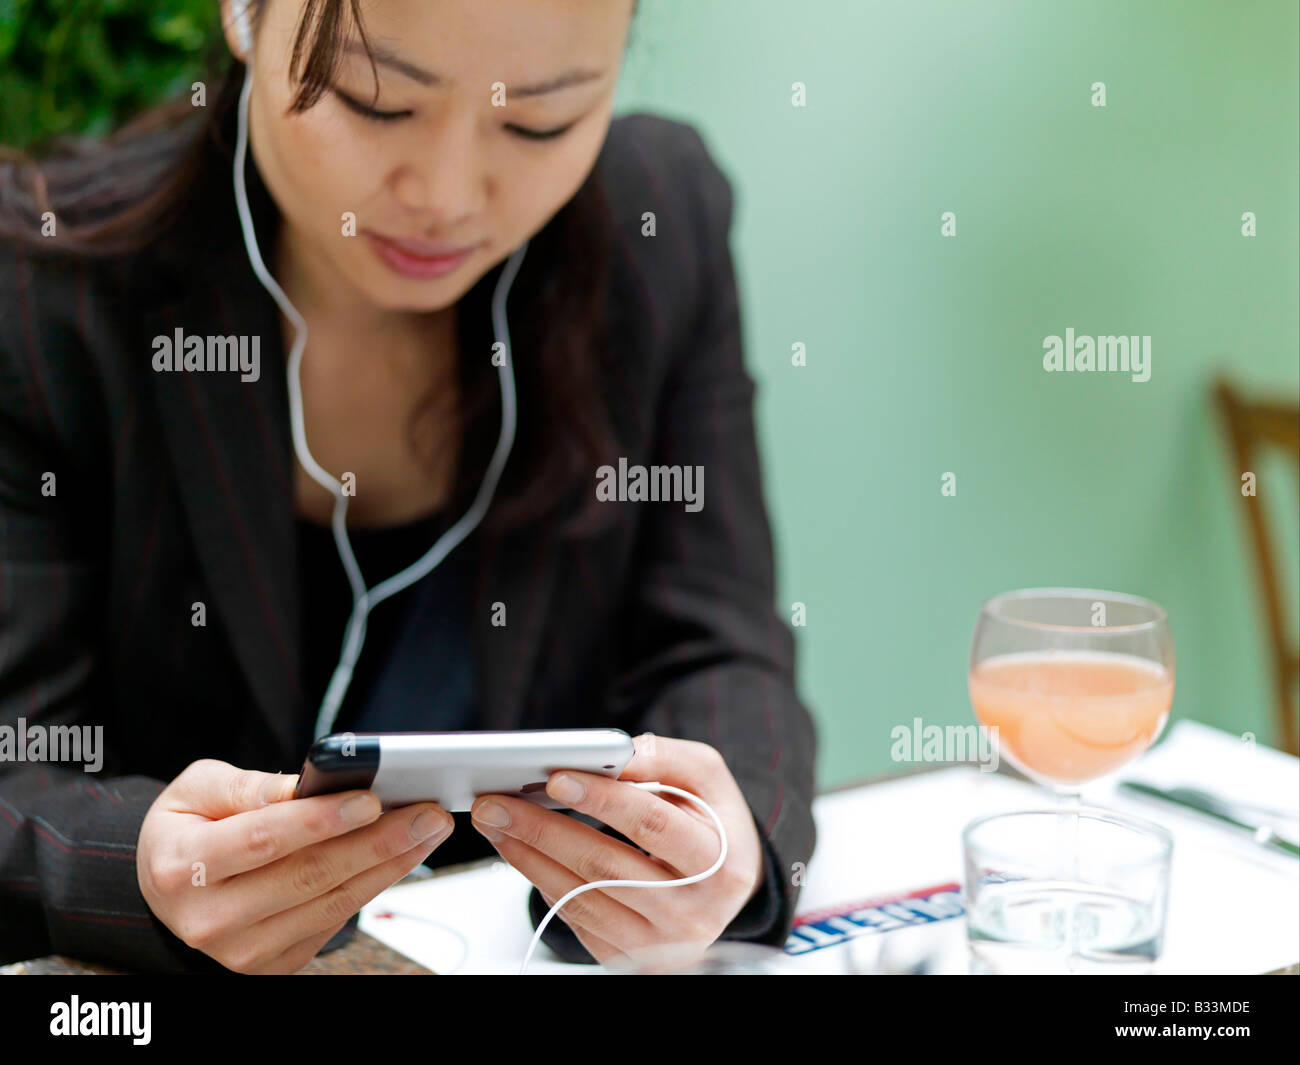 Eine junge Frau hört ihr Mobiltelefon während der Blick auf dem Bildschirm in einem Restaurant. Stockfoto